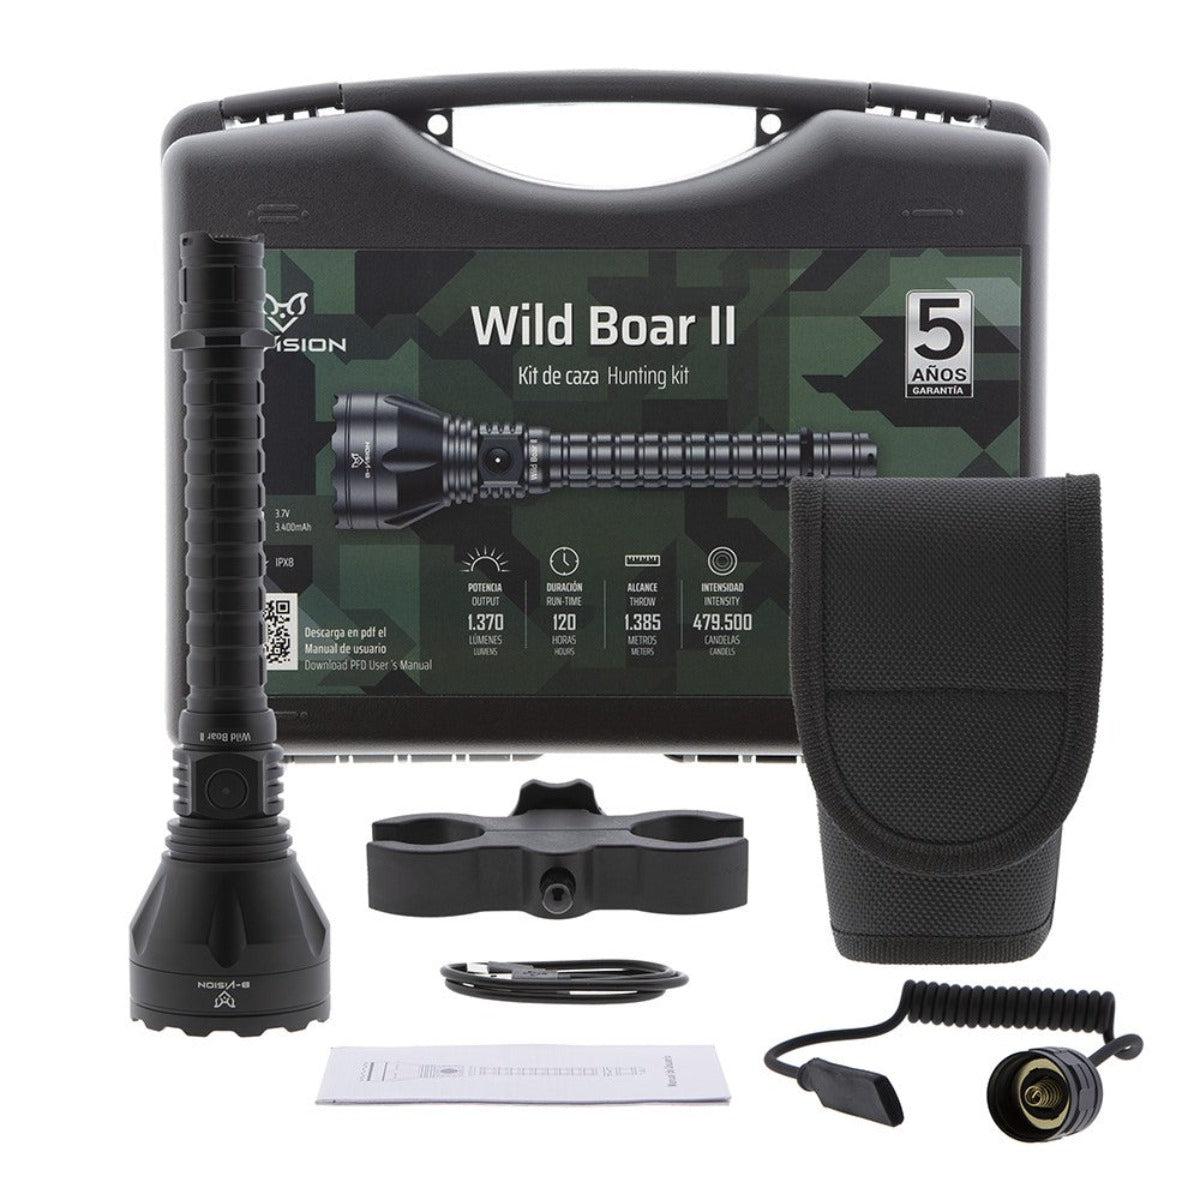 Kit de caza con linterna Wild Boar II Bat Vision